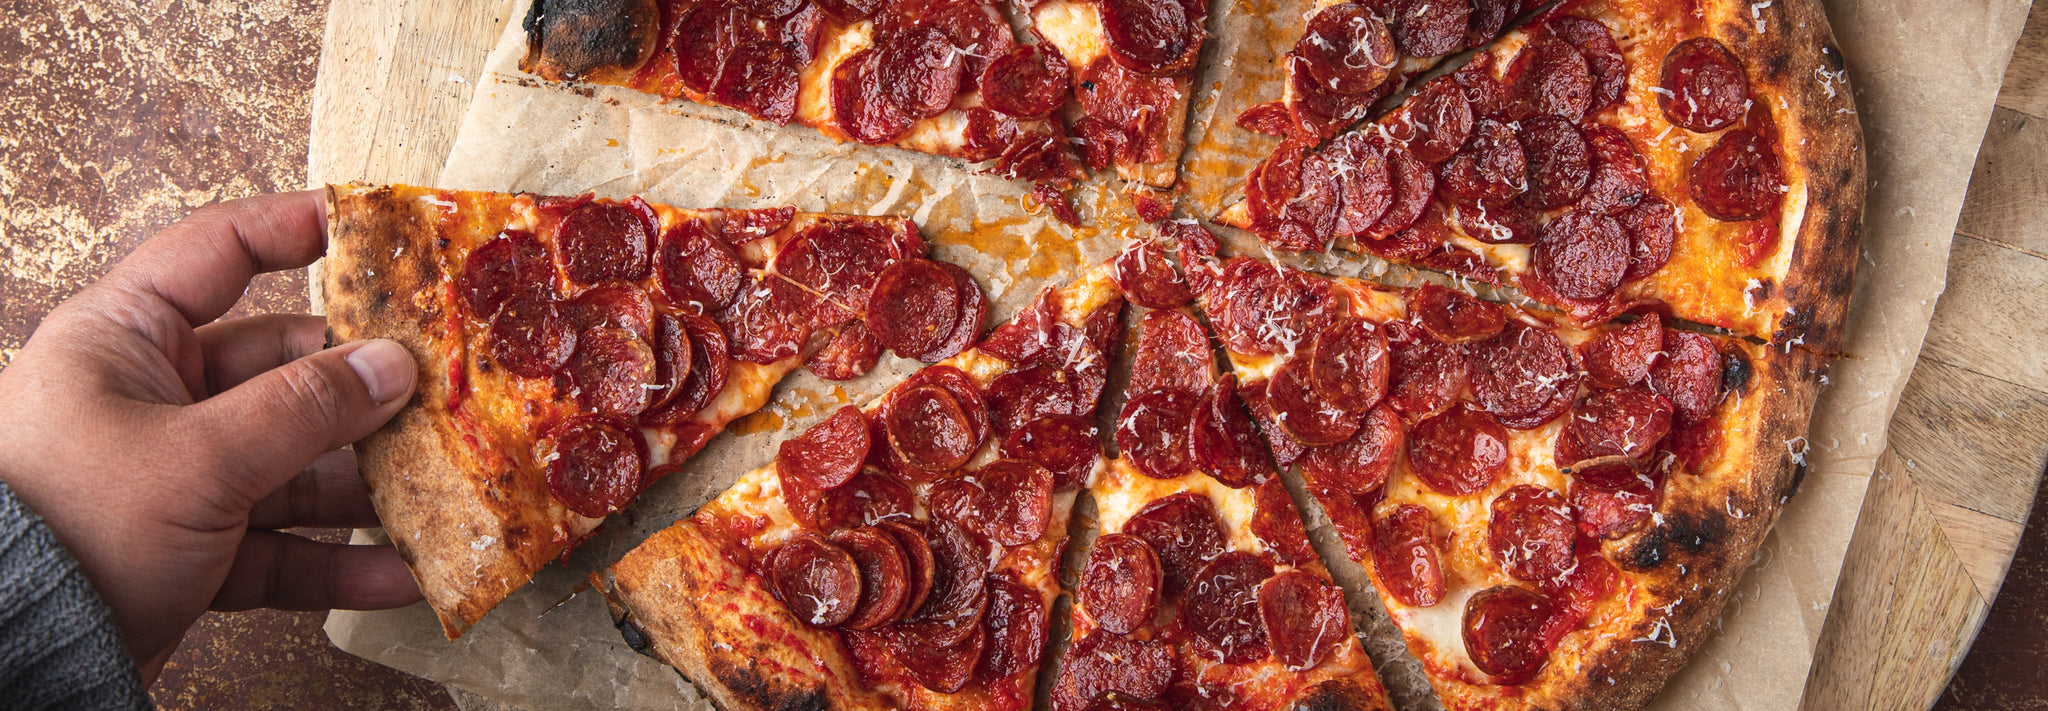 16" Pepperoni Pizza Recipe - Gozney . Dome